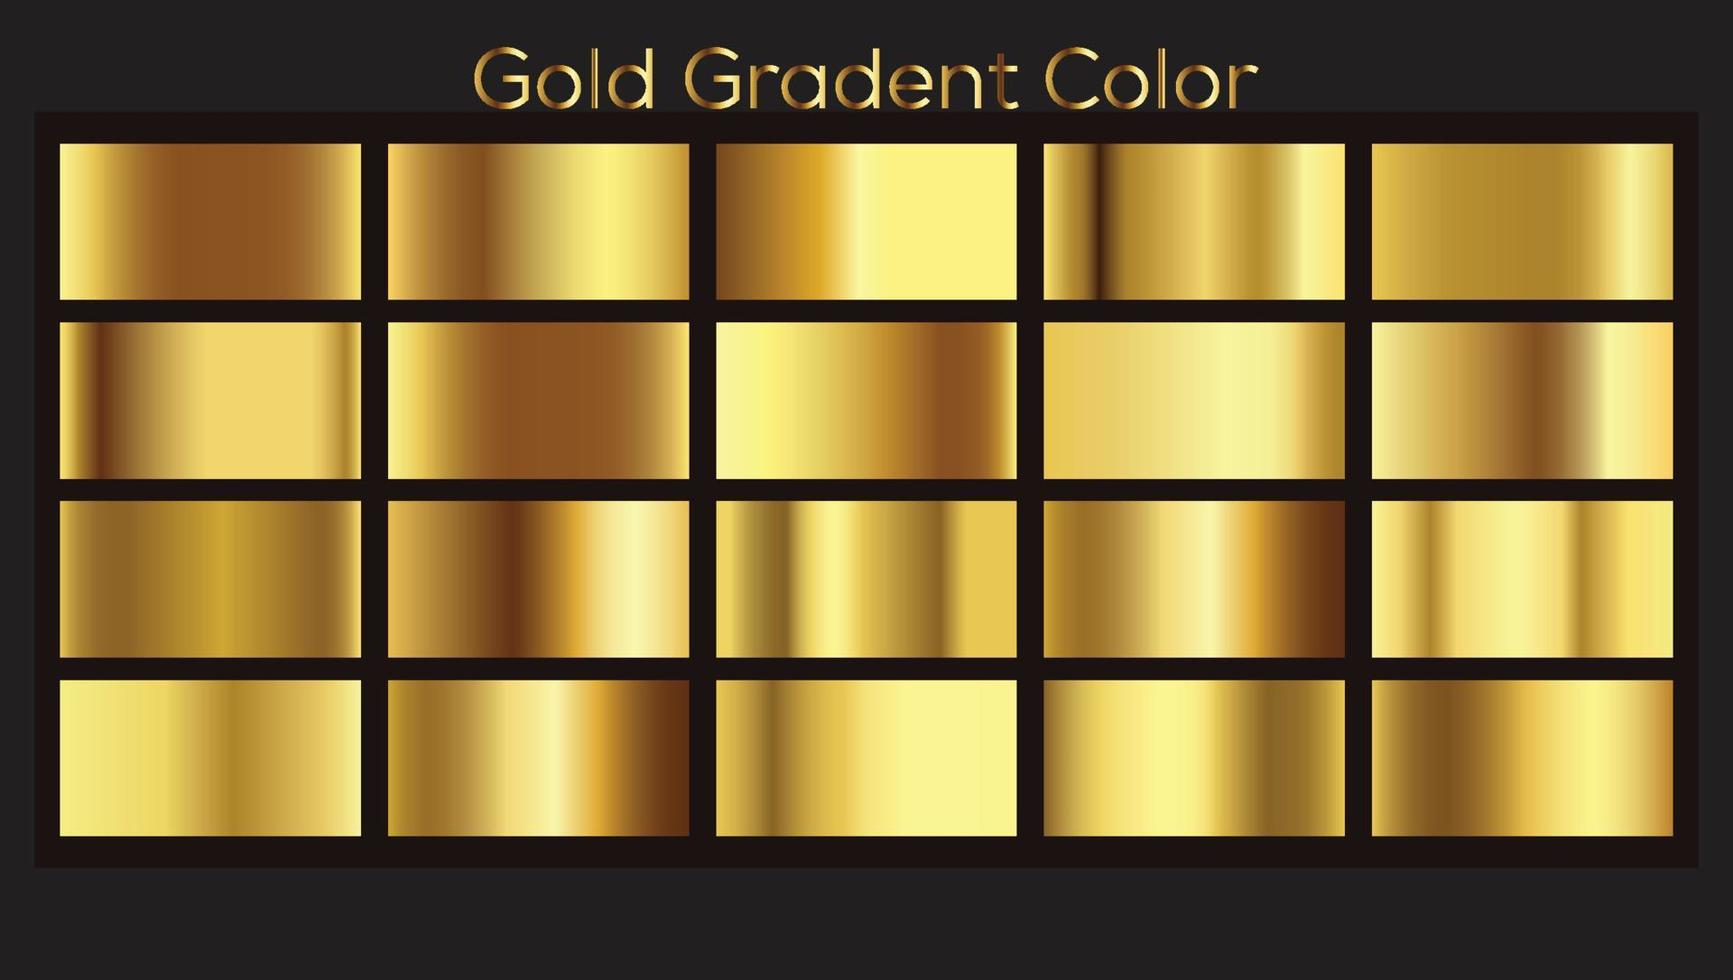 gesetzter vektor der goldmetallischen farbverlaufsfarbe